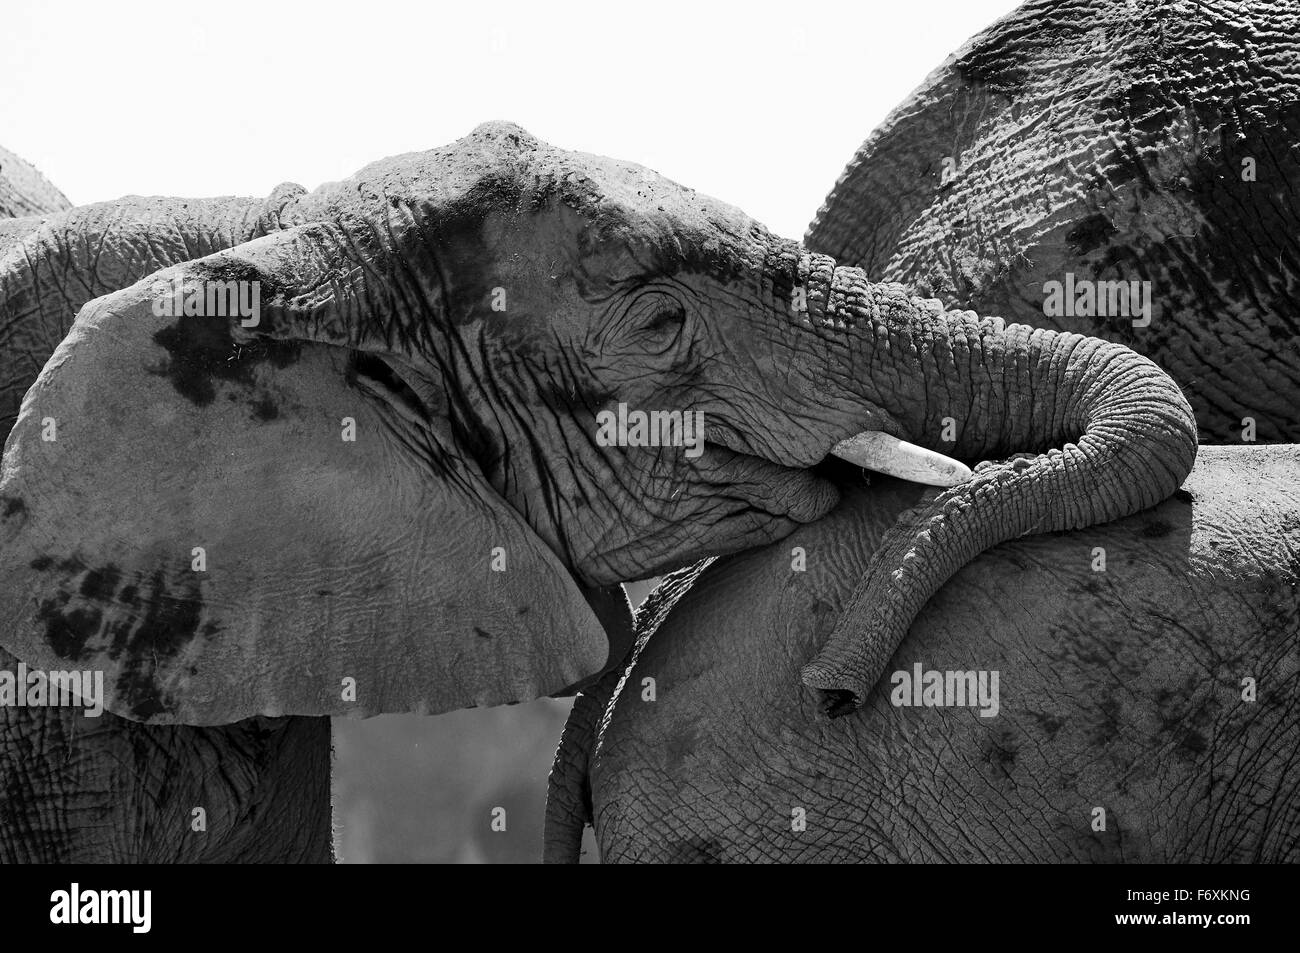 Un jeune éléphant photographié en noir et blanc tout en appuyant l'arrière d'un autre éléphant Banque D'Images